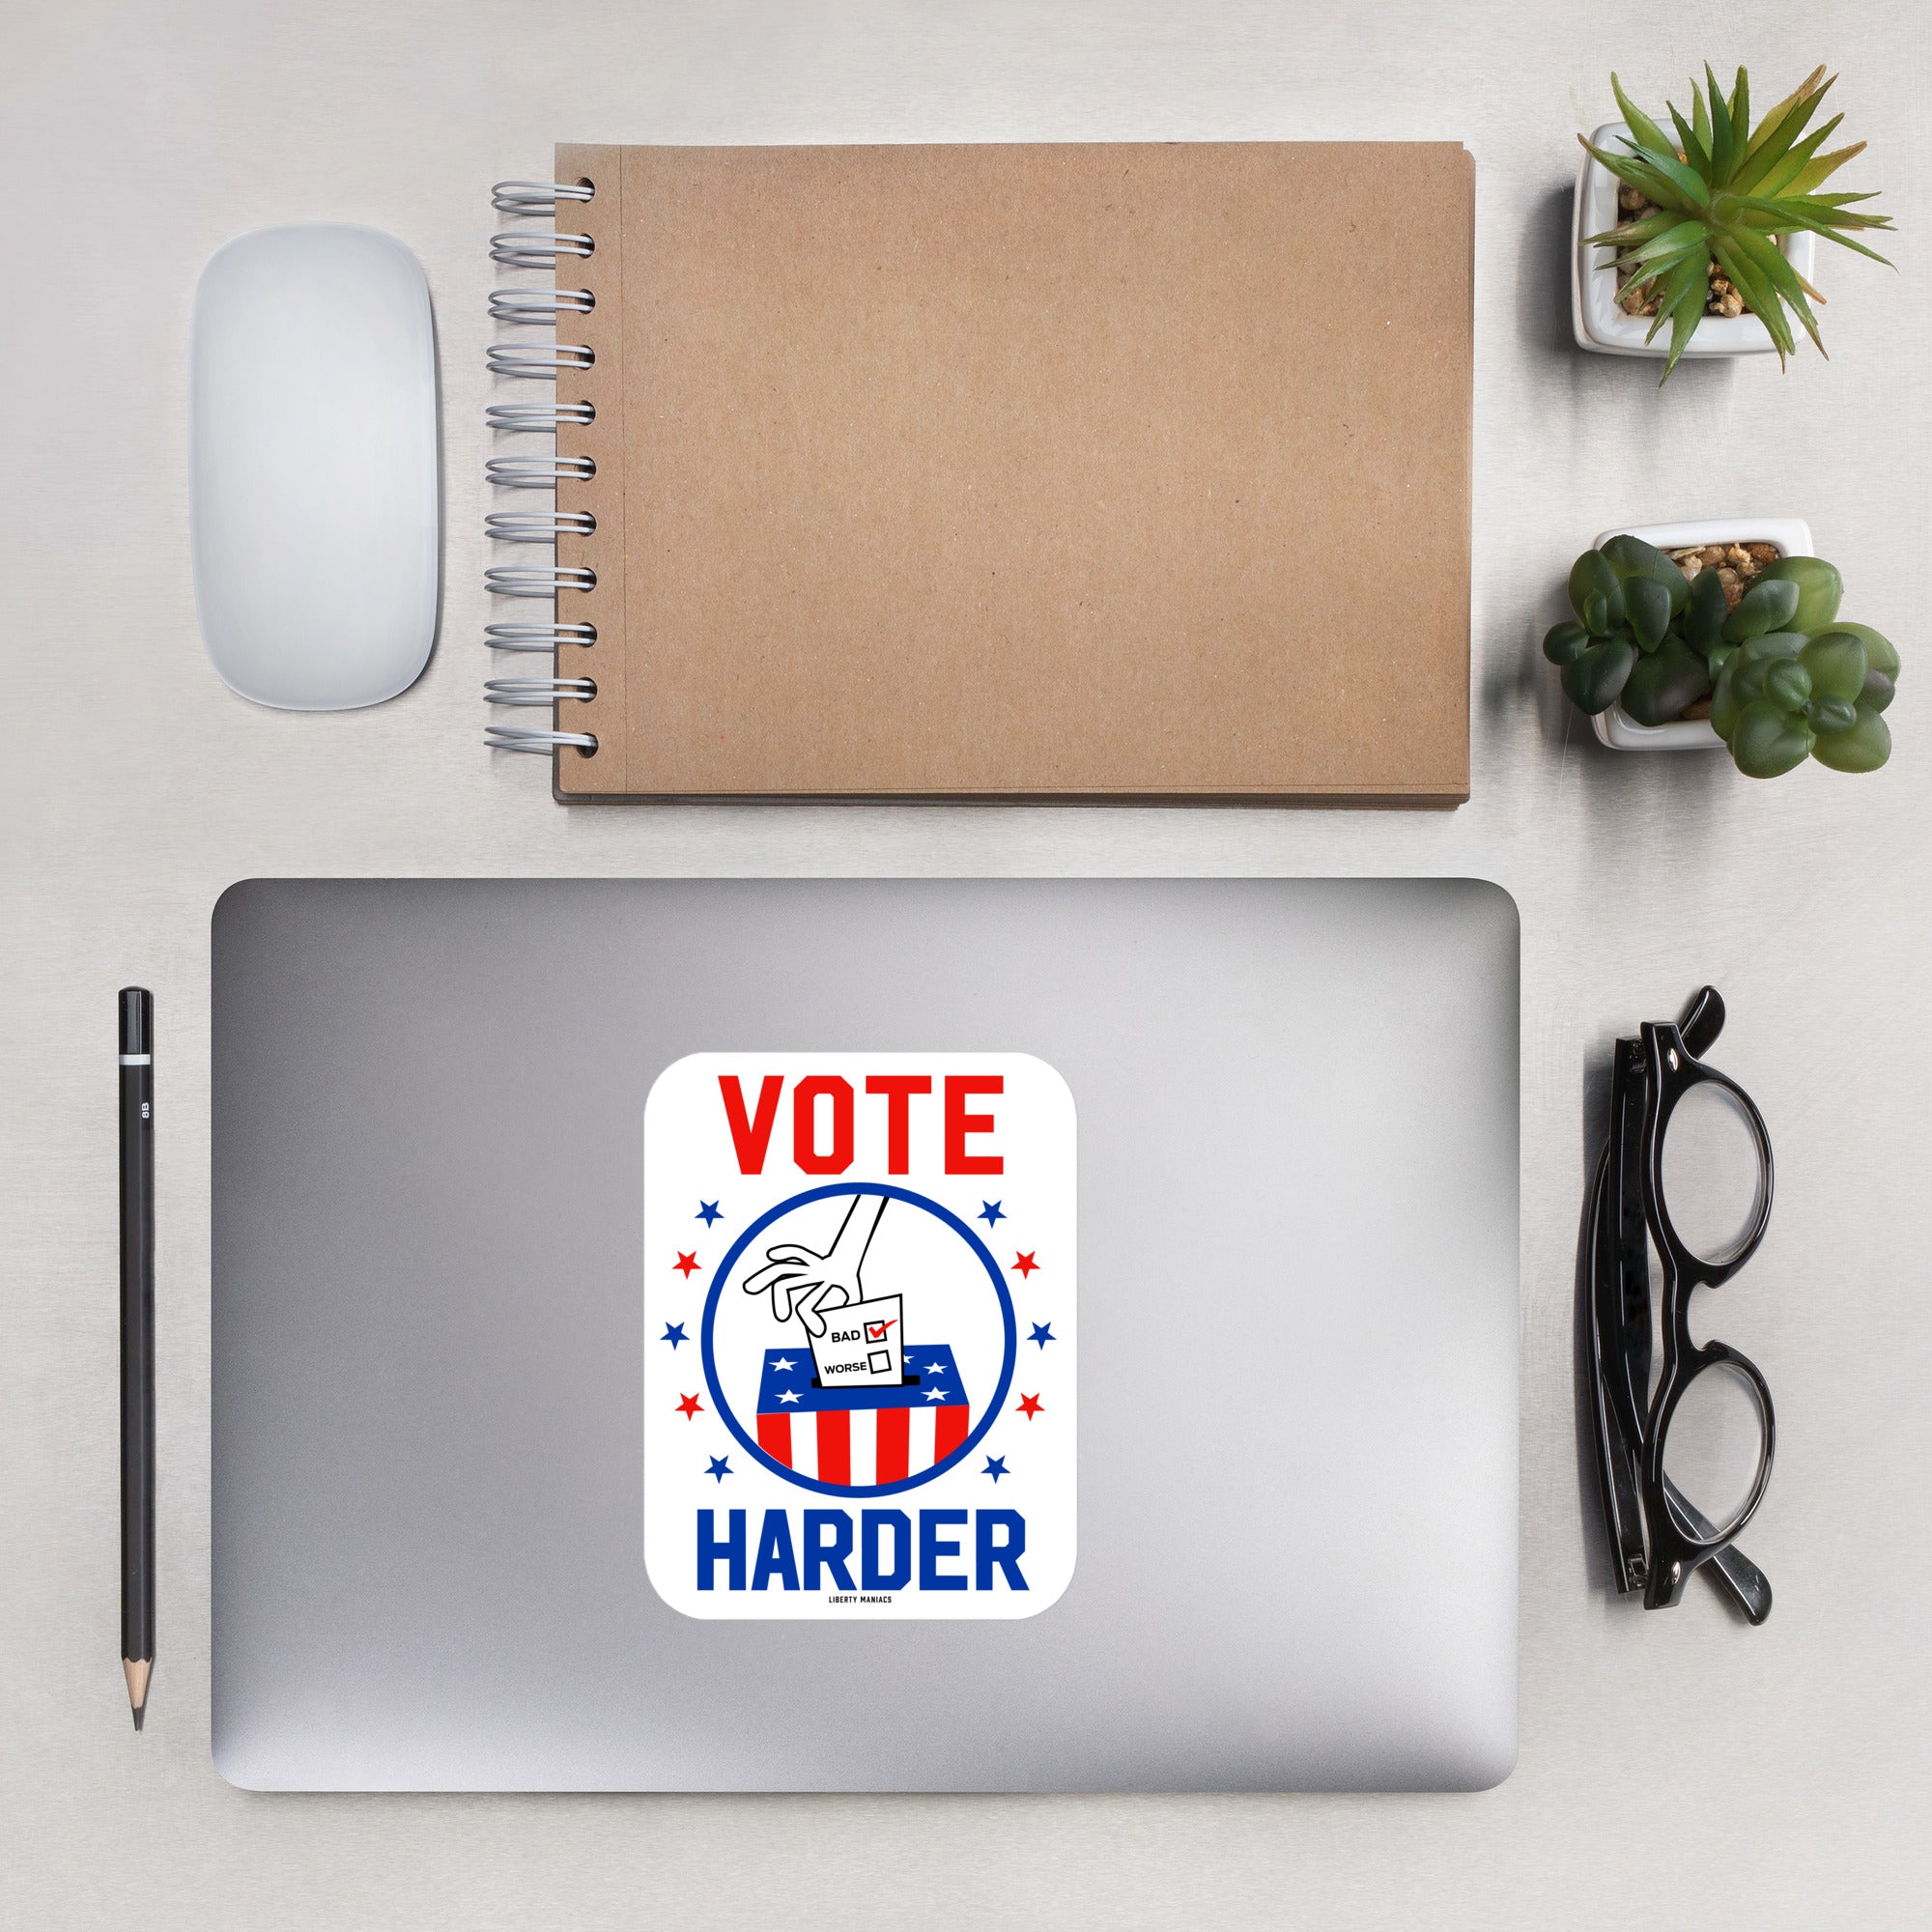 Vote Harder Sticker